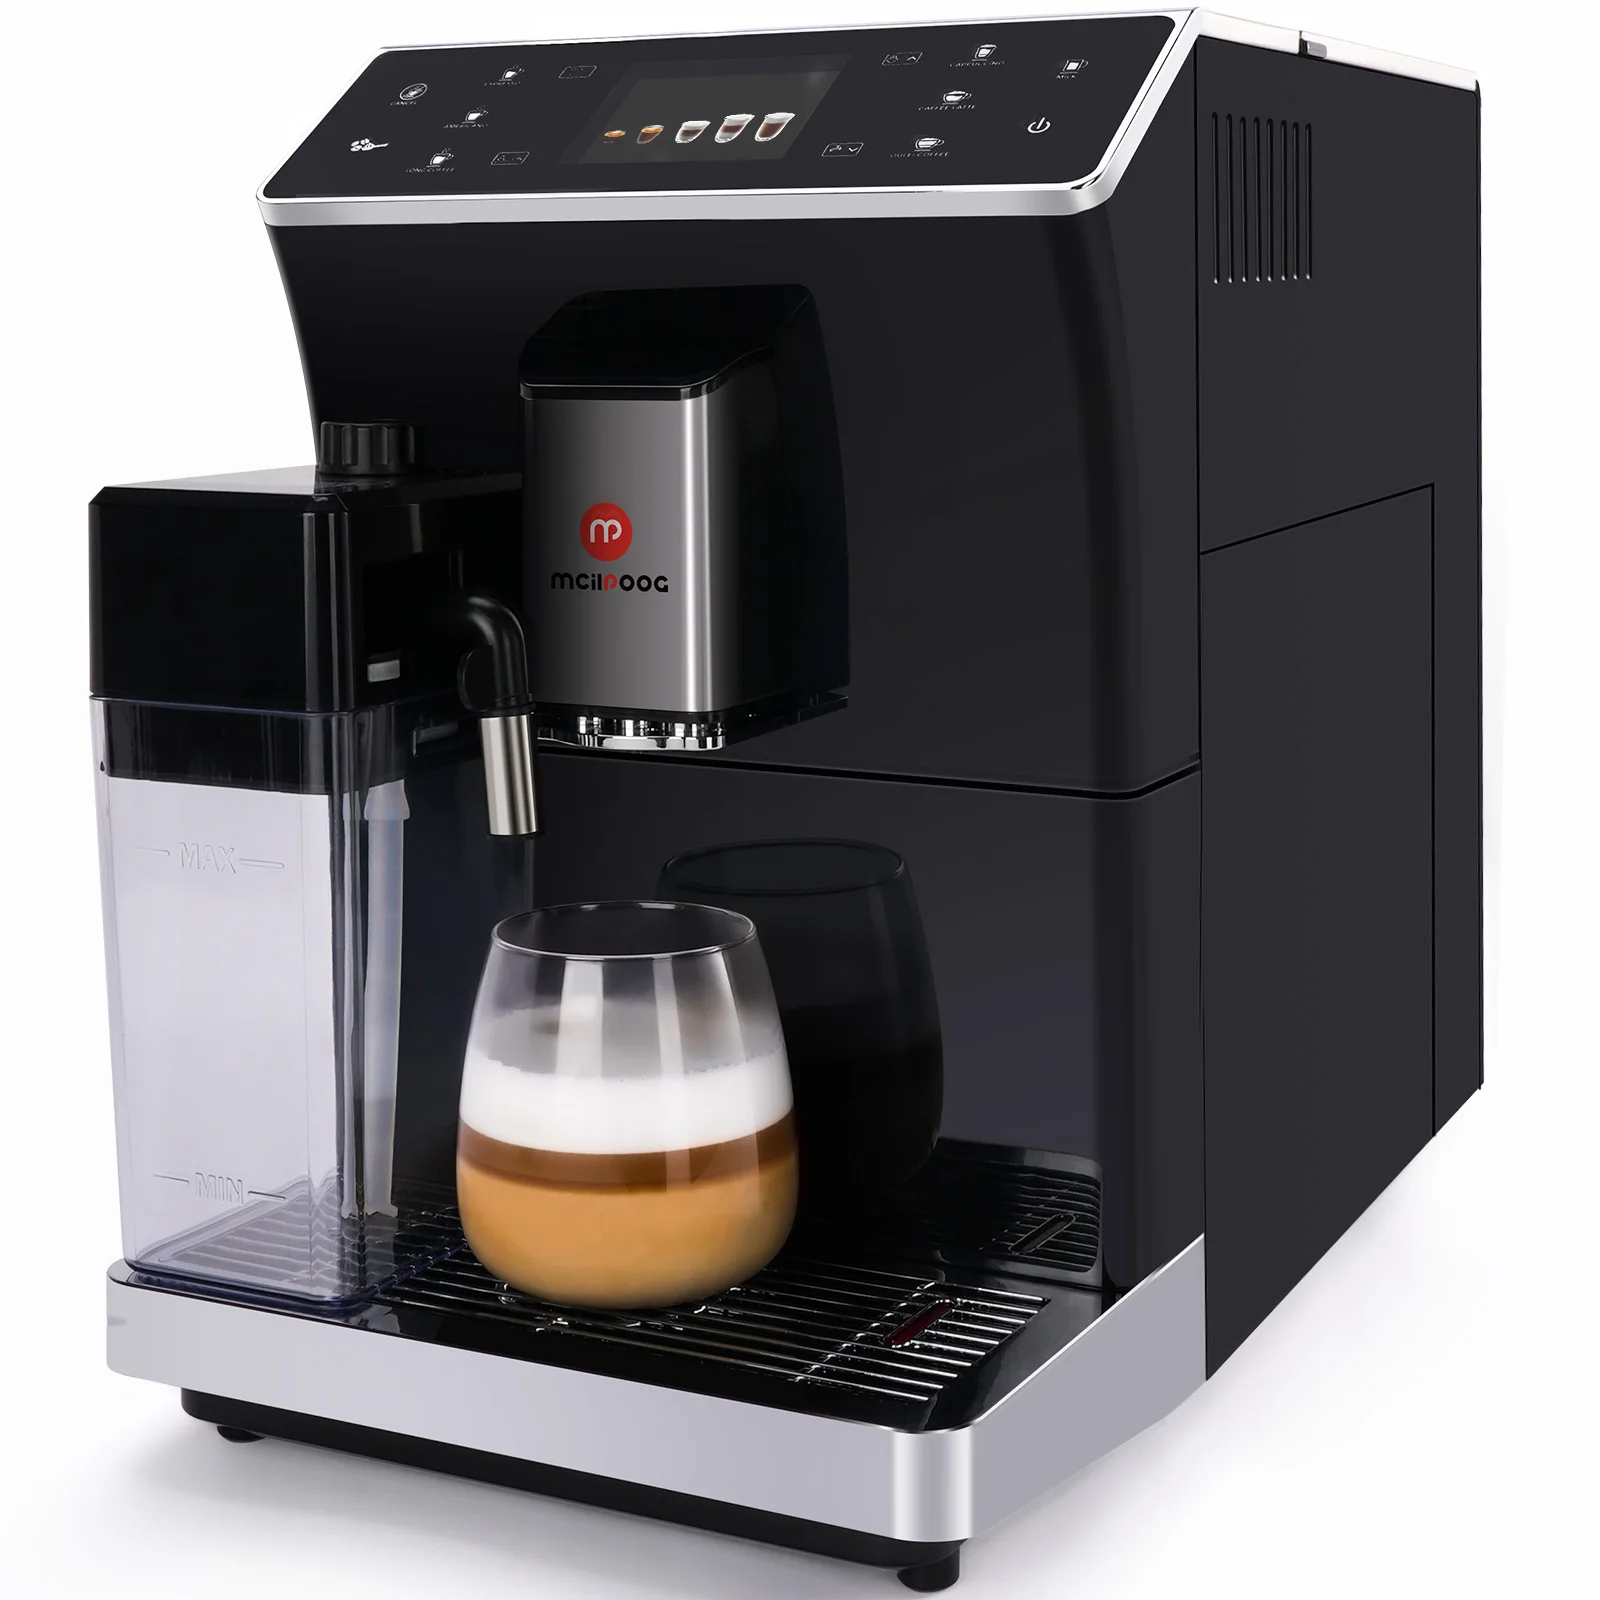 Суперавтоматическая кофемашина Mcilpoog WS-202 для приготовления эспрессо-латте с молочным баком в один клик